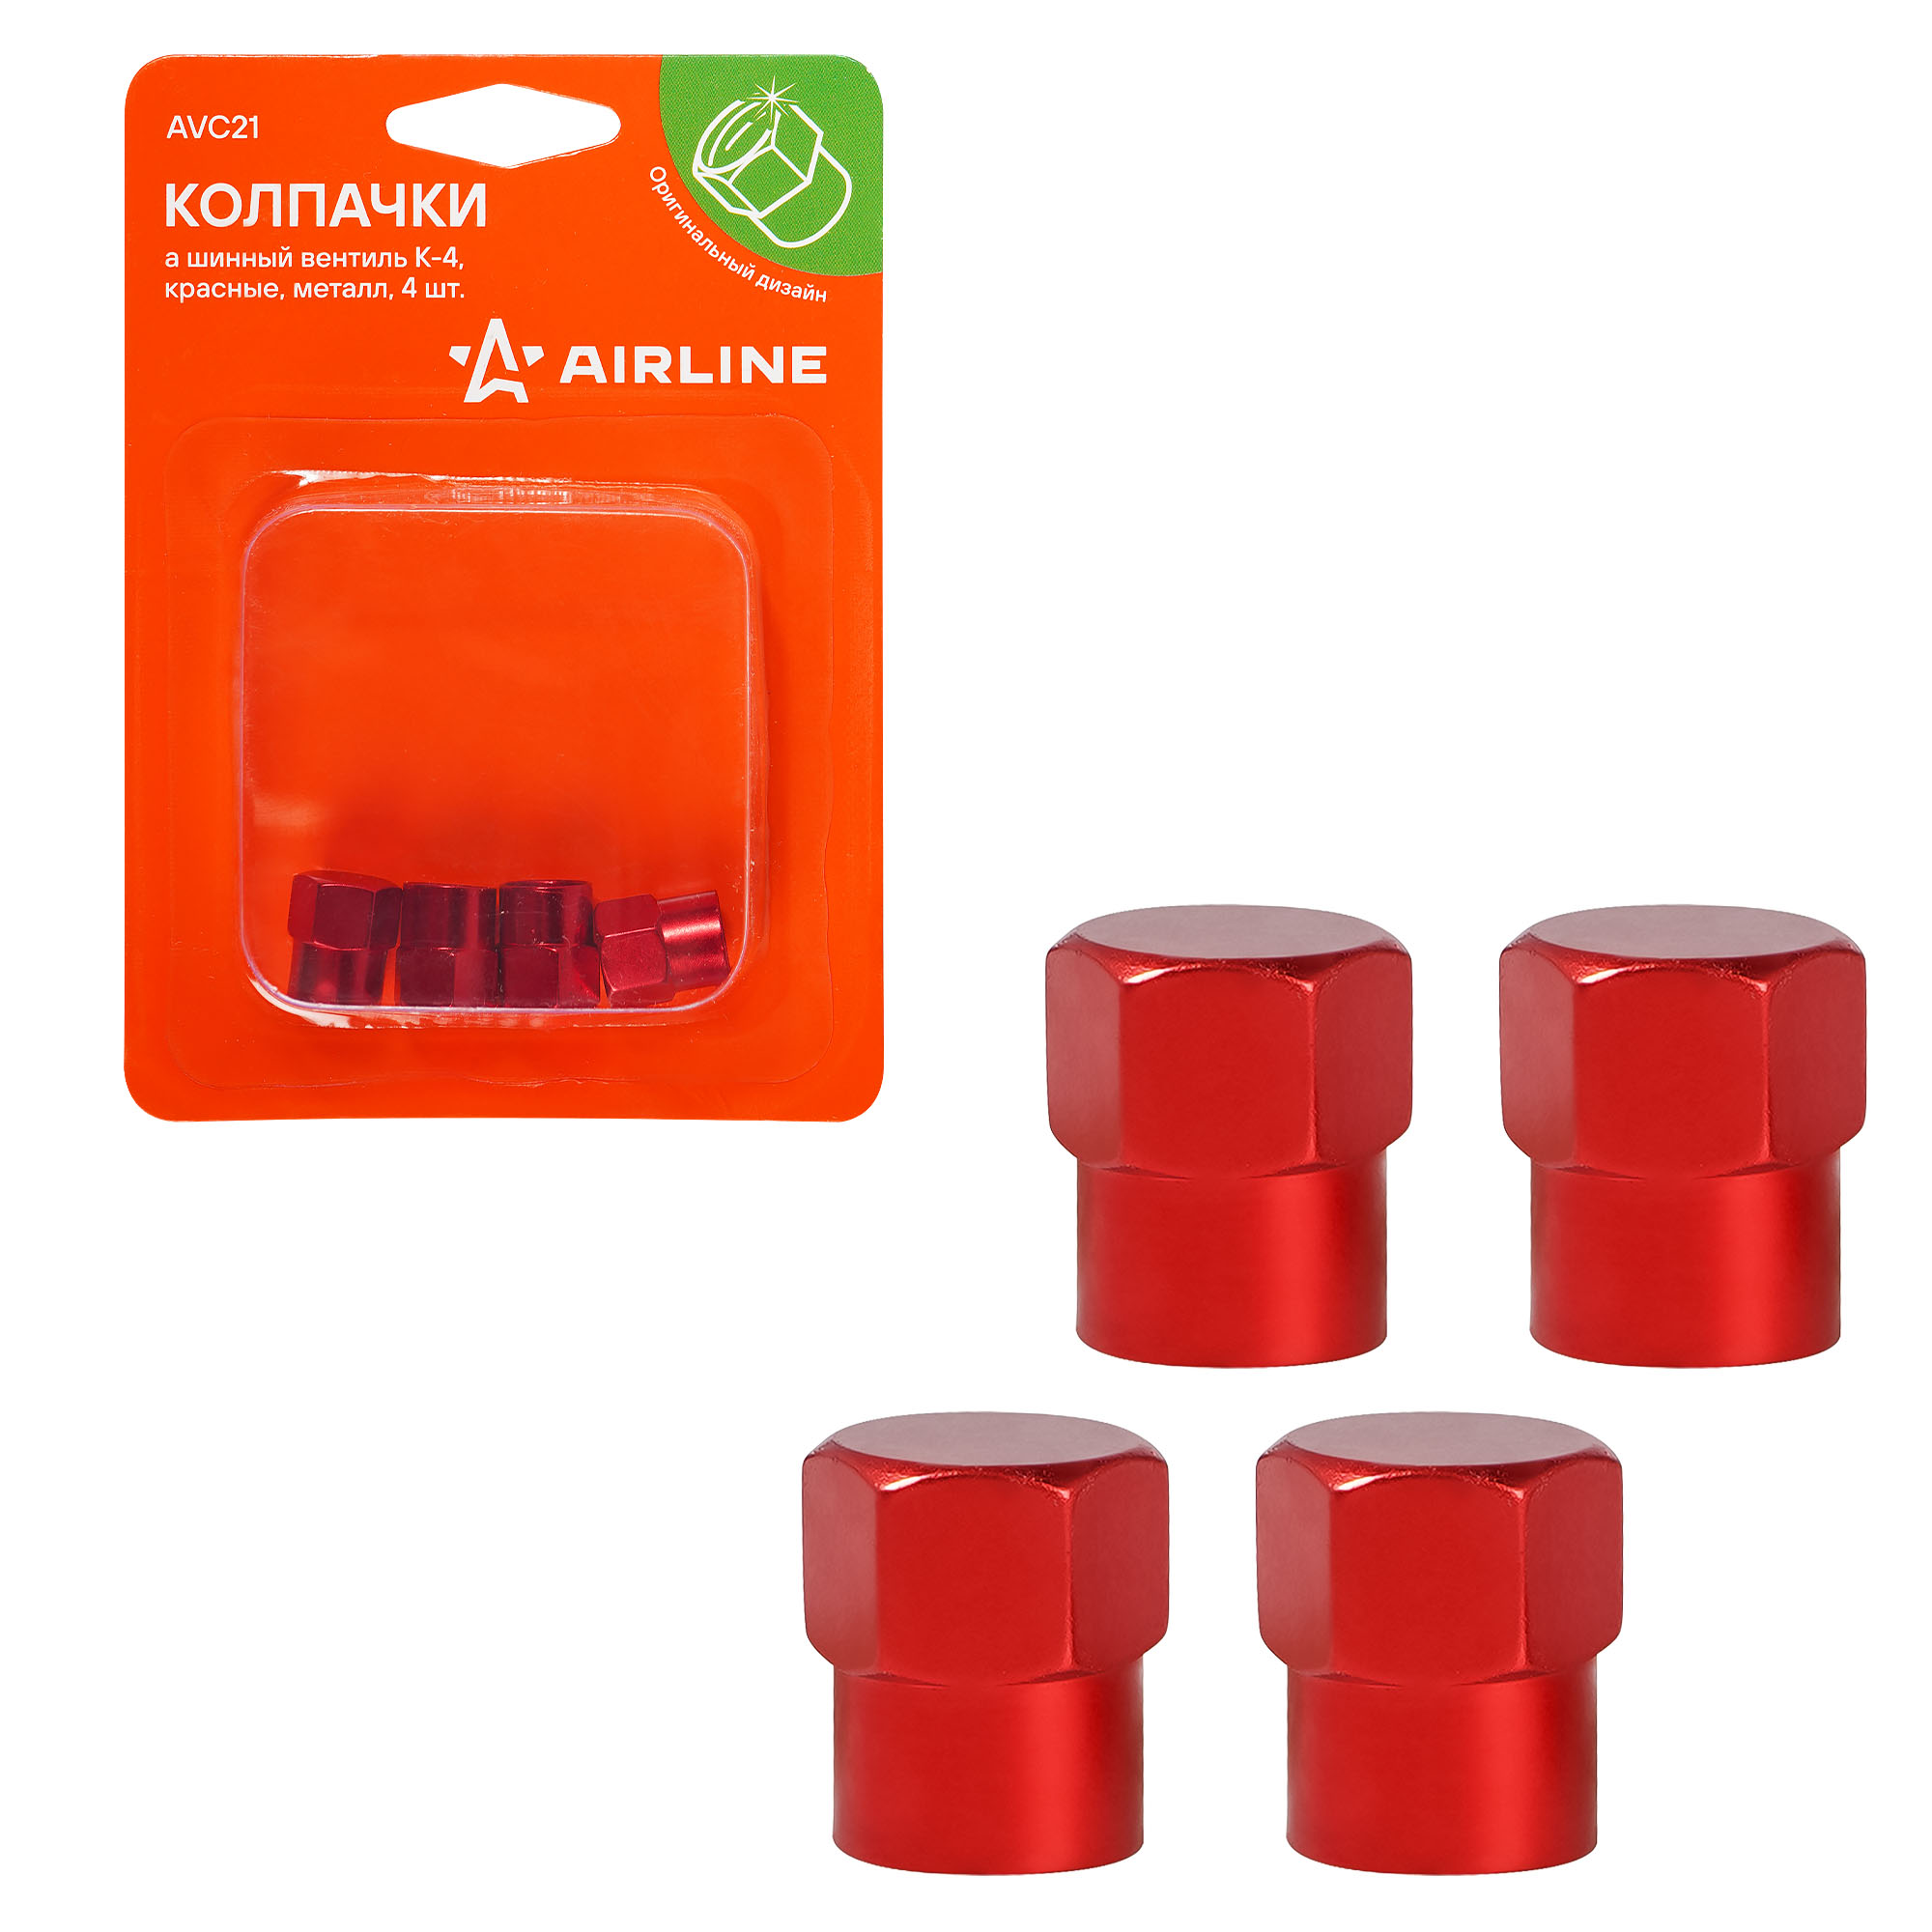 Колпачки на шинный вентиль Airline K-4, красные, металл, 4 шт AVC21